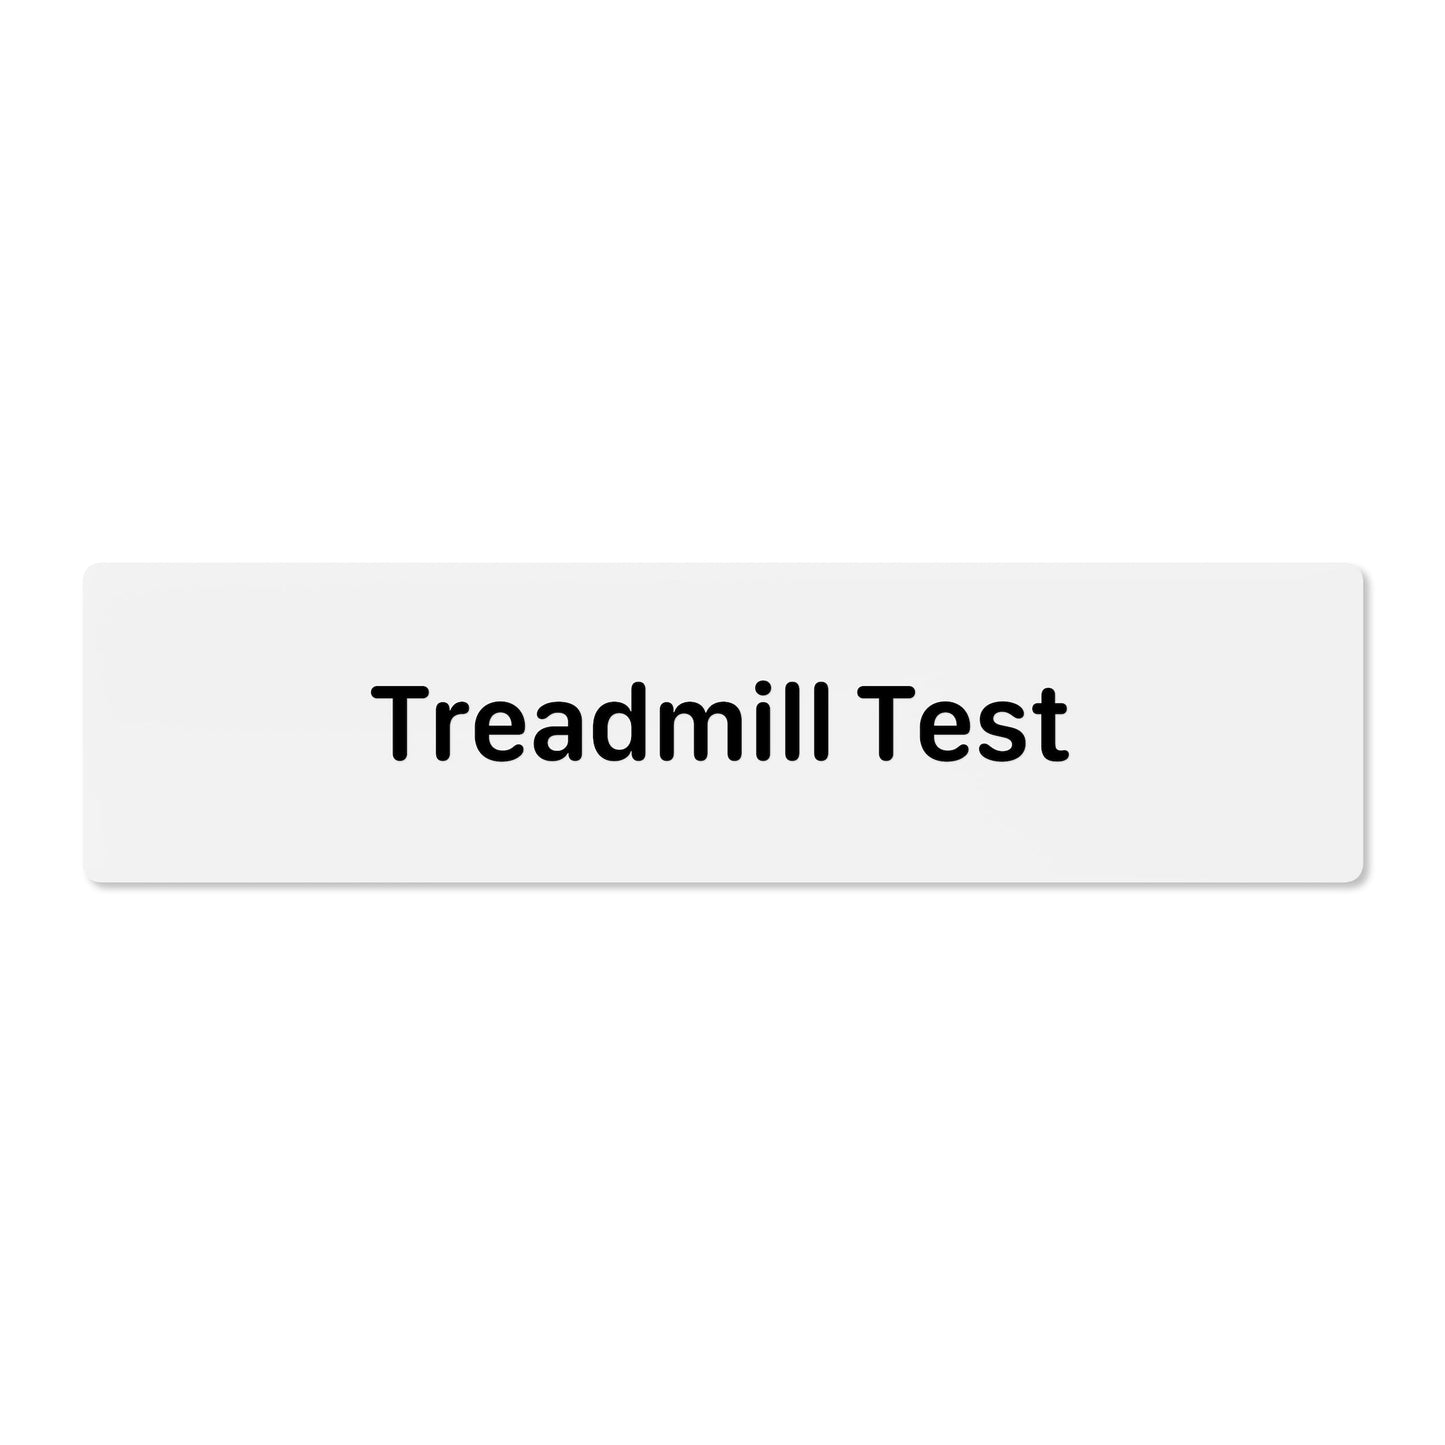 Treadmill Test